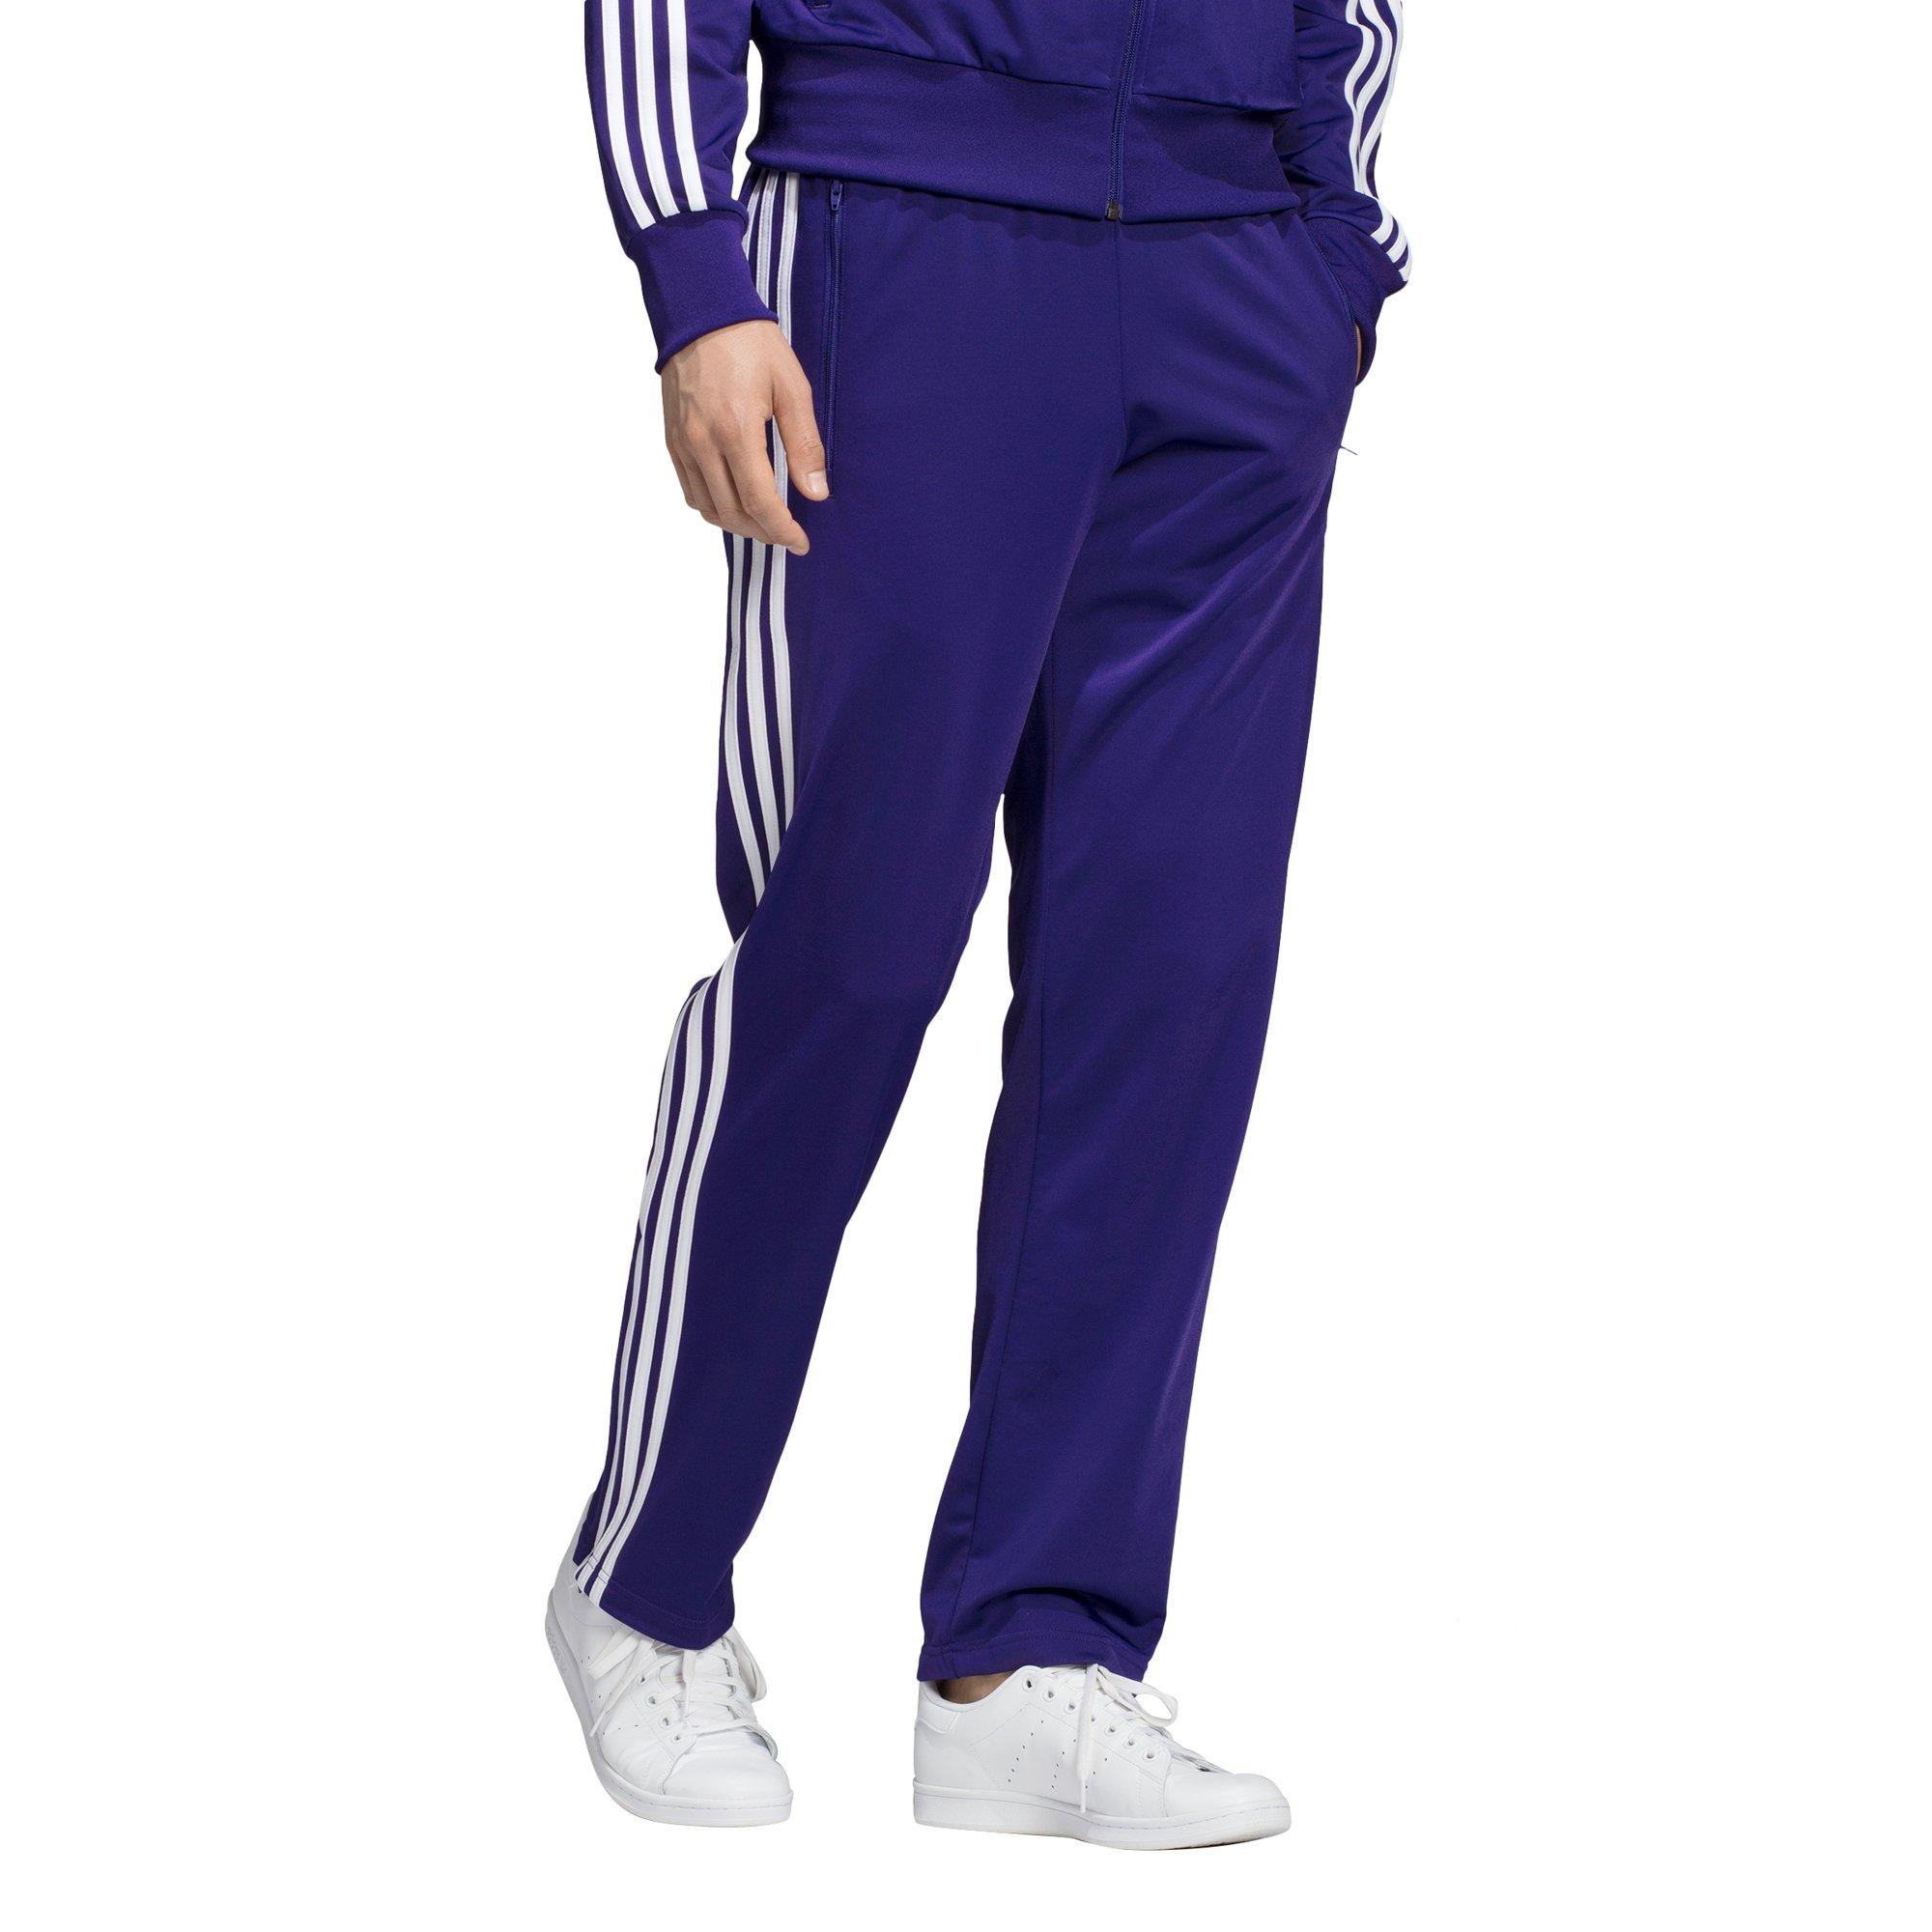 purple adidas pants mens